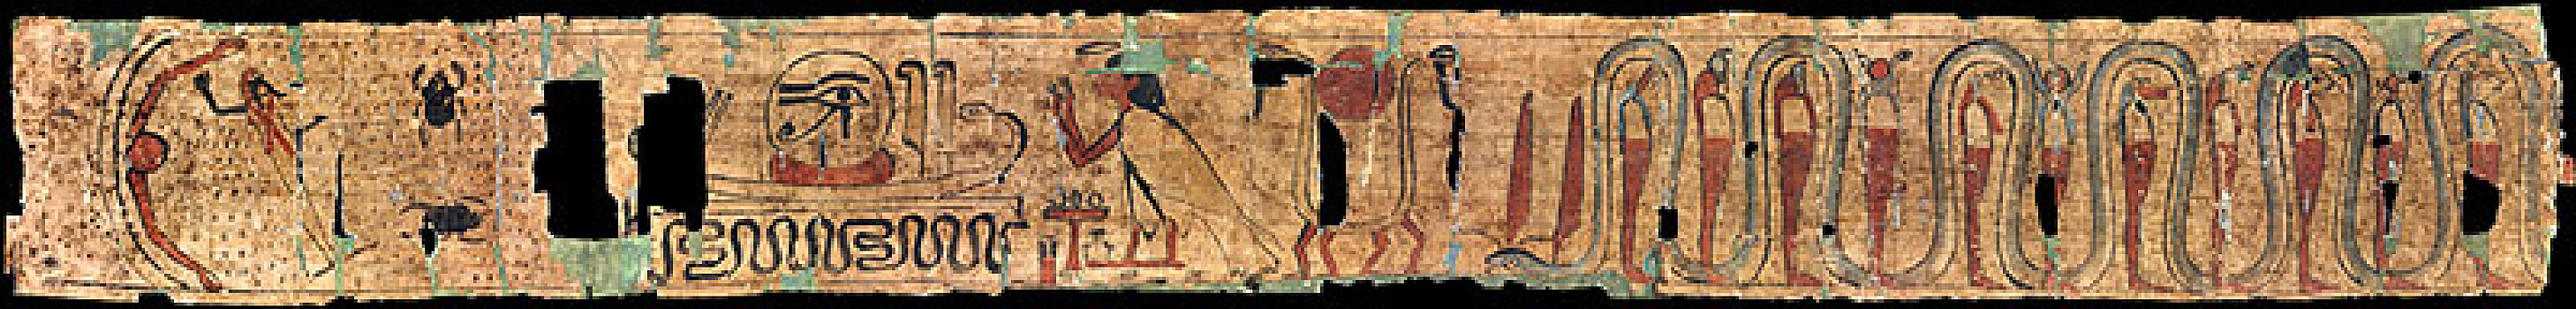 古埃及,丧葬,文字,艺术家